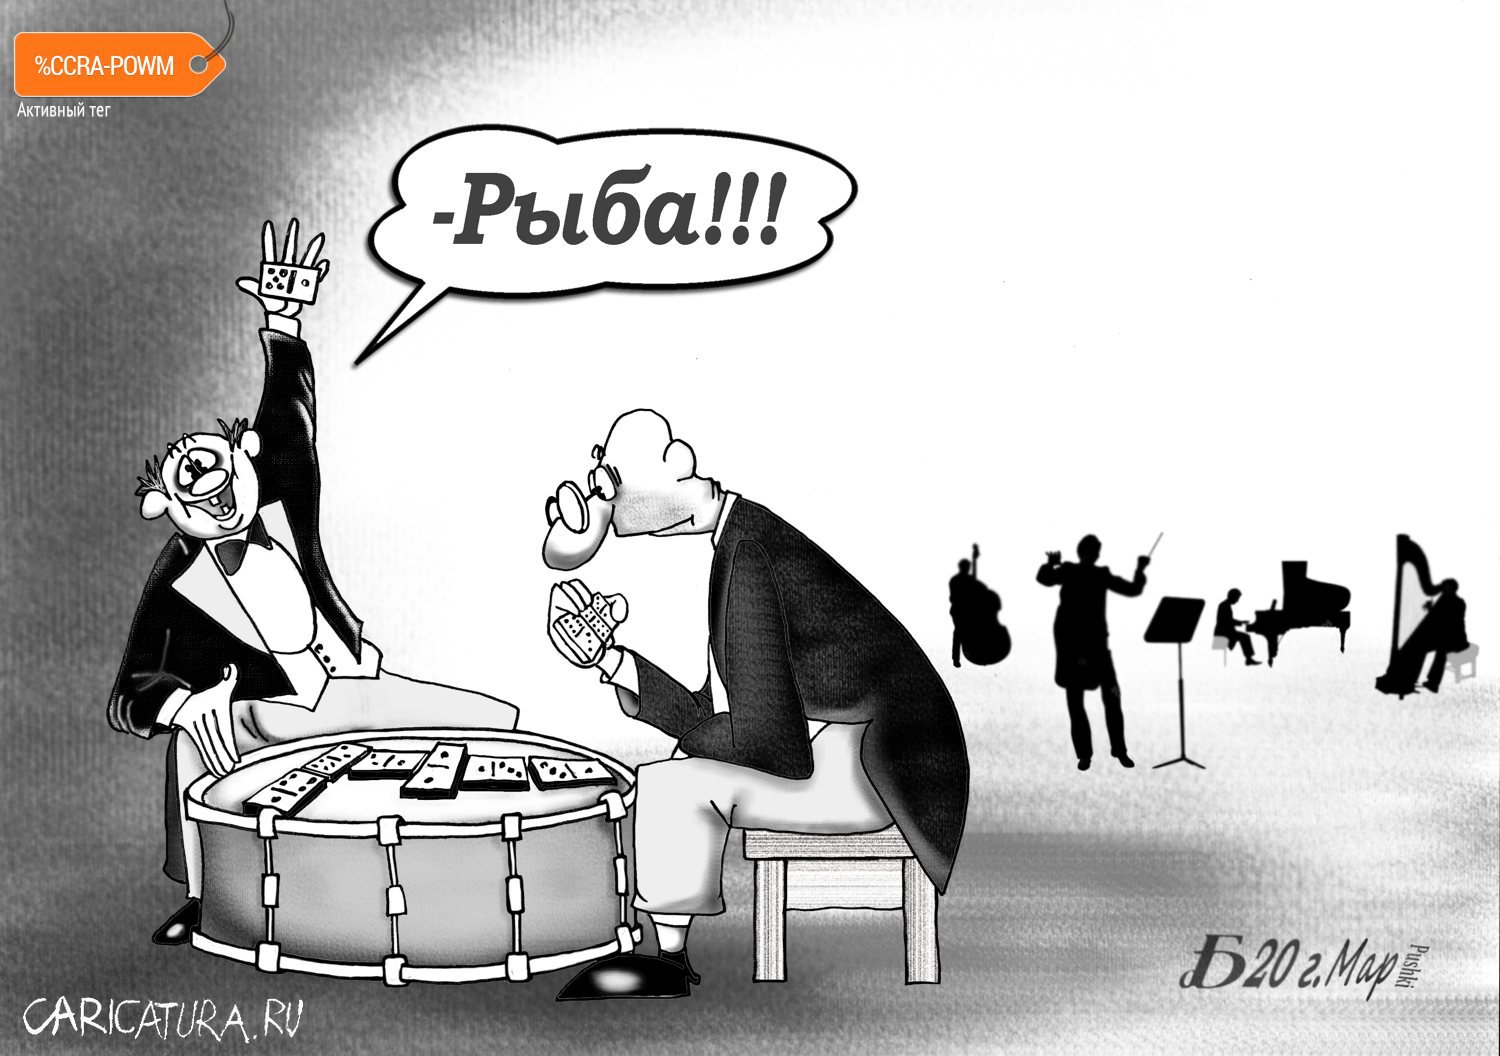 Карикатура "Про рыбу", Борис Демин